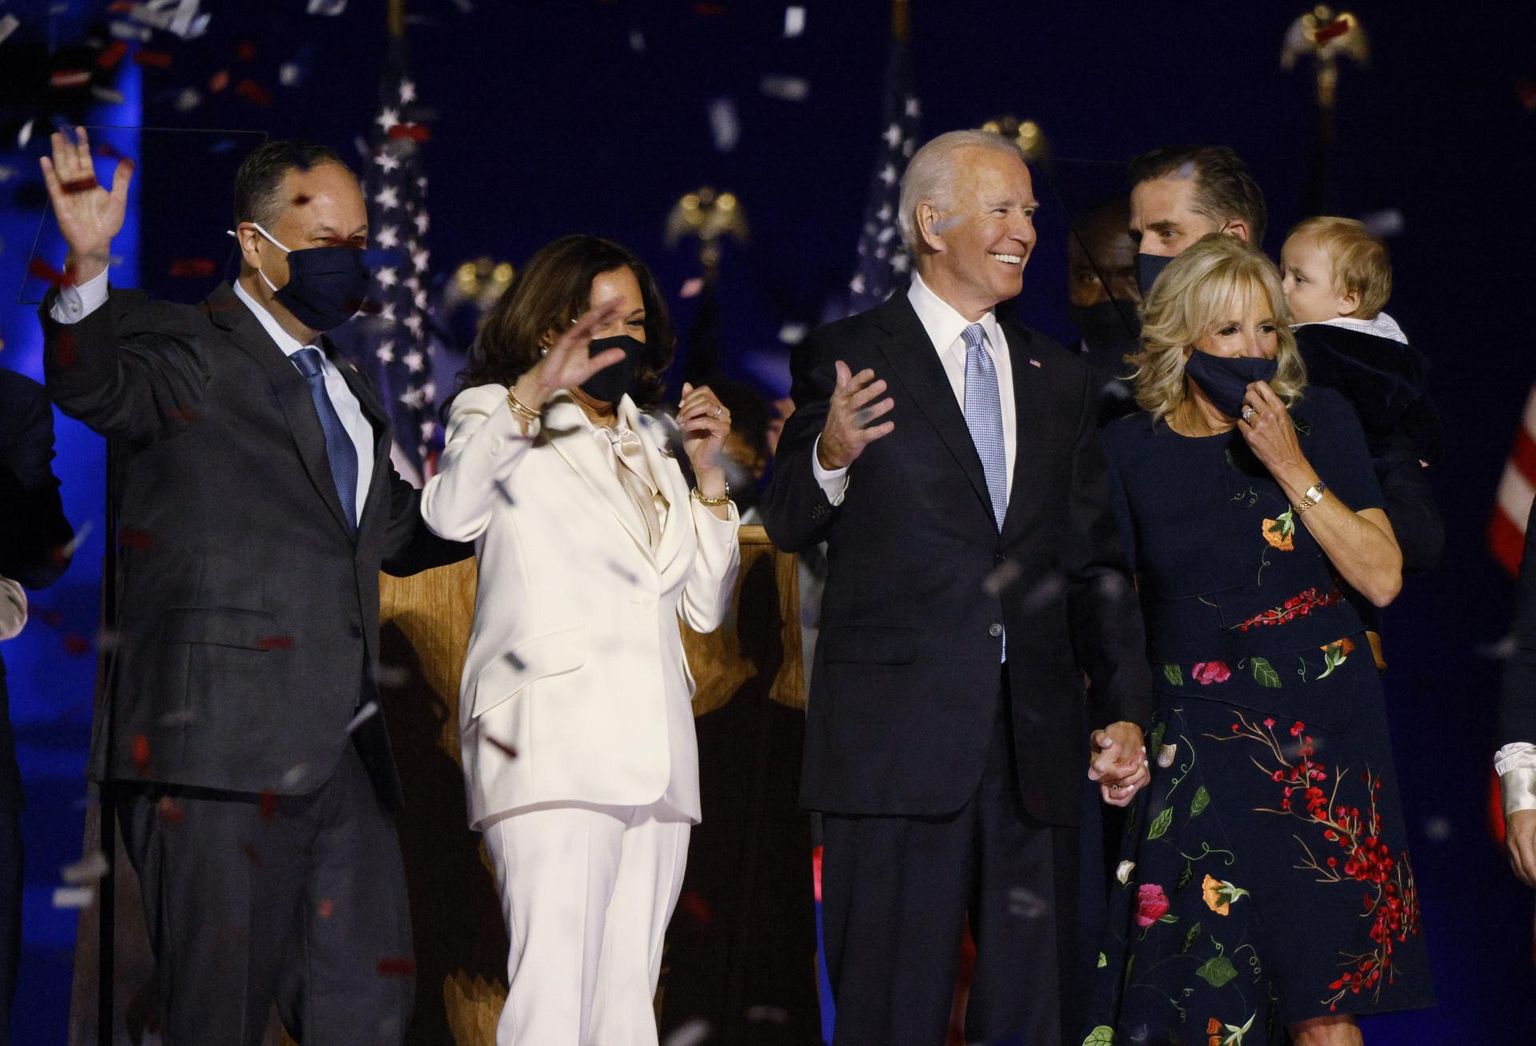 Ameerika Ühendriikide 46. president Joe Biden ja asepresident Kamala Harris abikaasadega tähistavad valimisvõitu Delaware’i osariigis Wilmingtonis. FOTO: Jim Bourg/Reuters/Scanpix